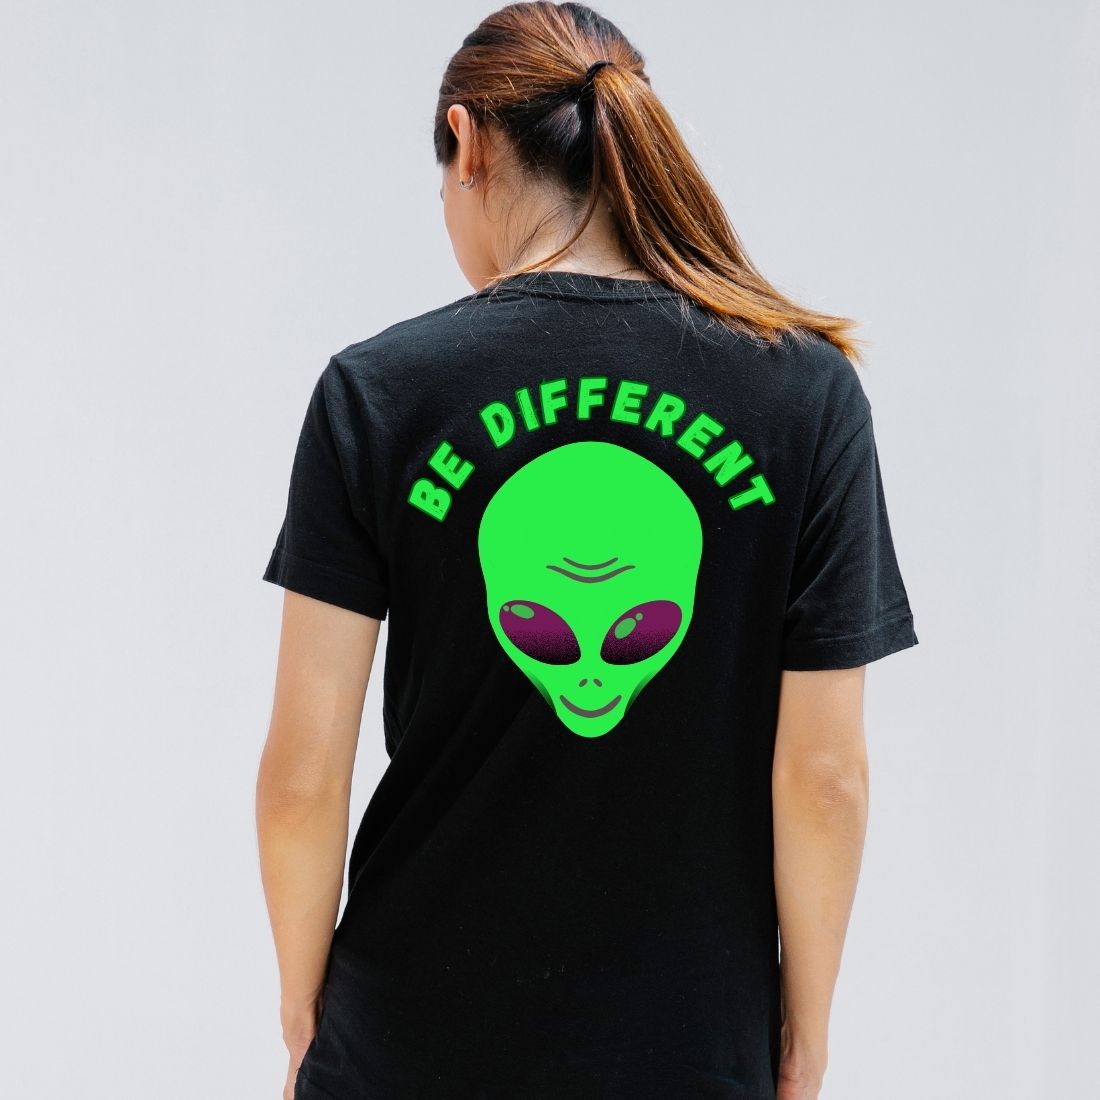 Alien t shirt design preview image.